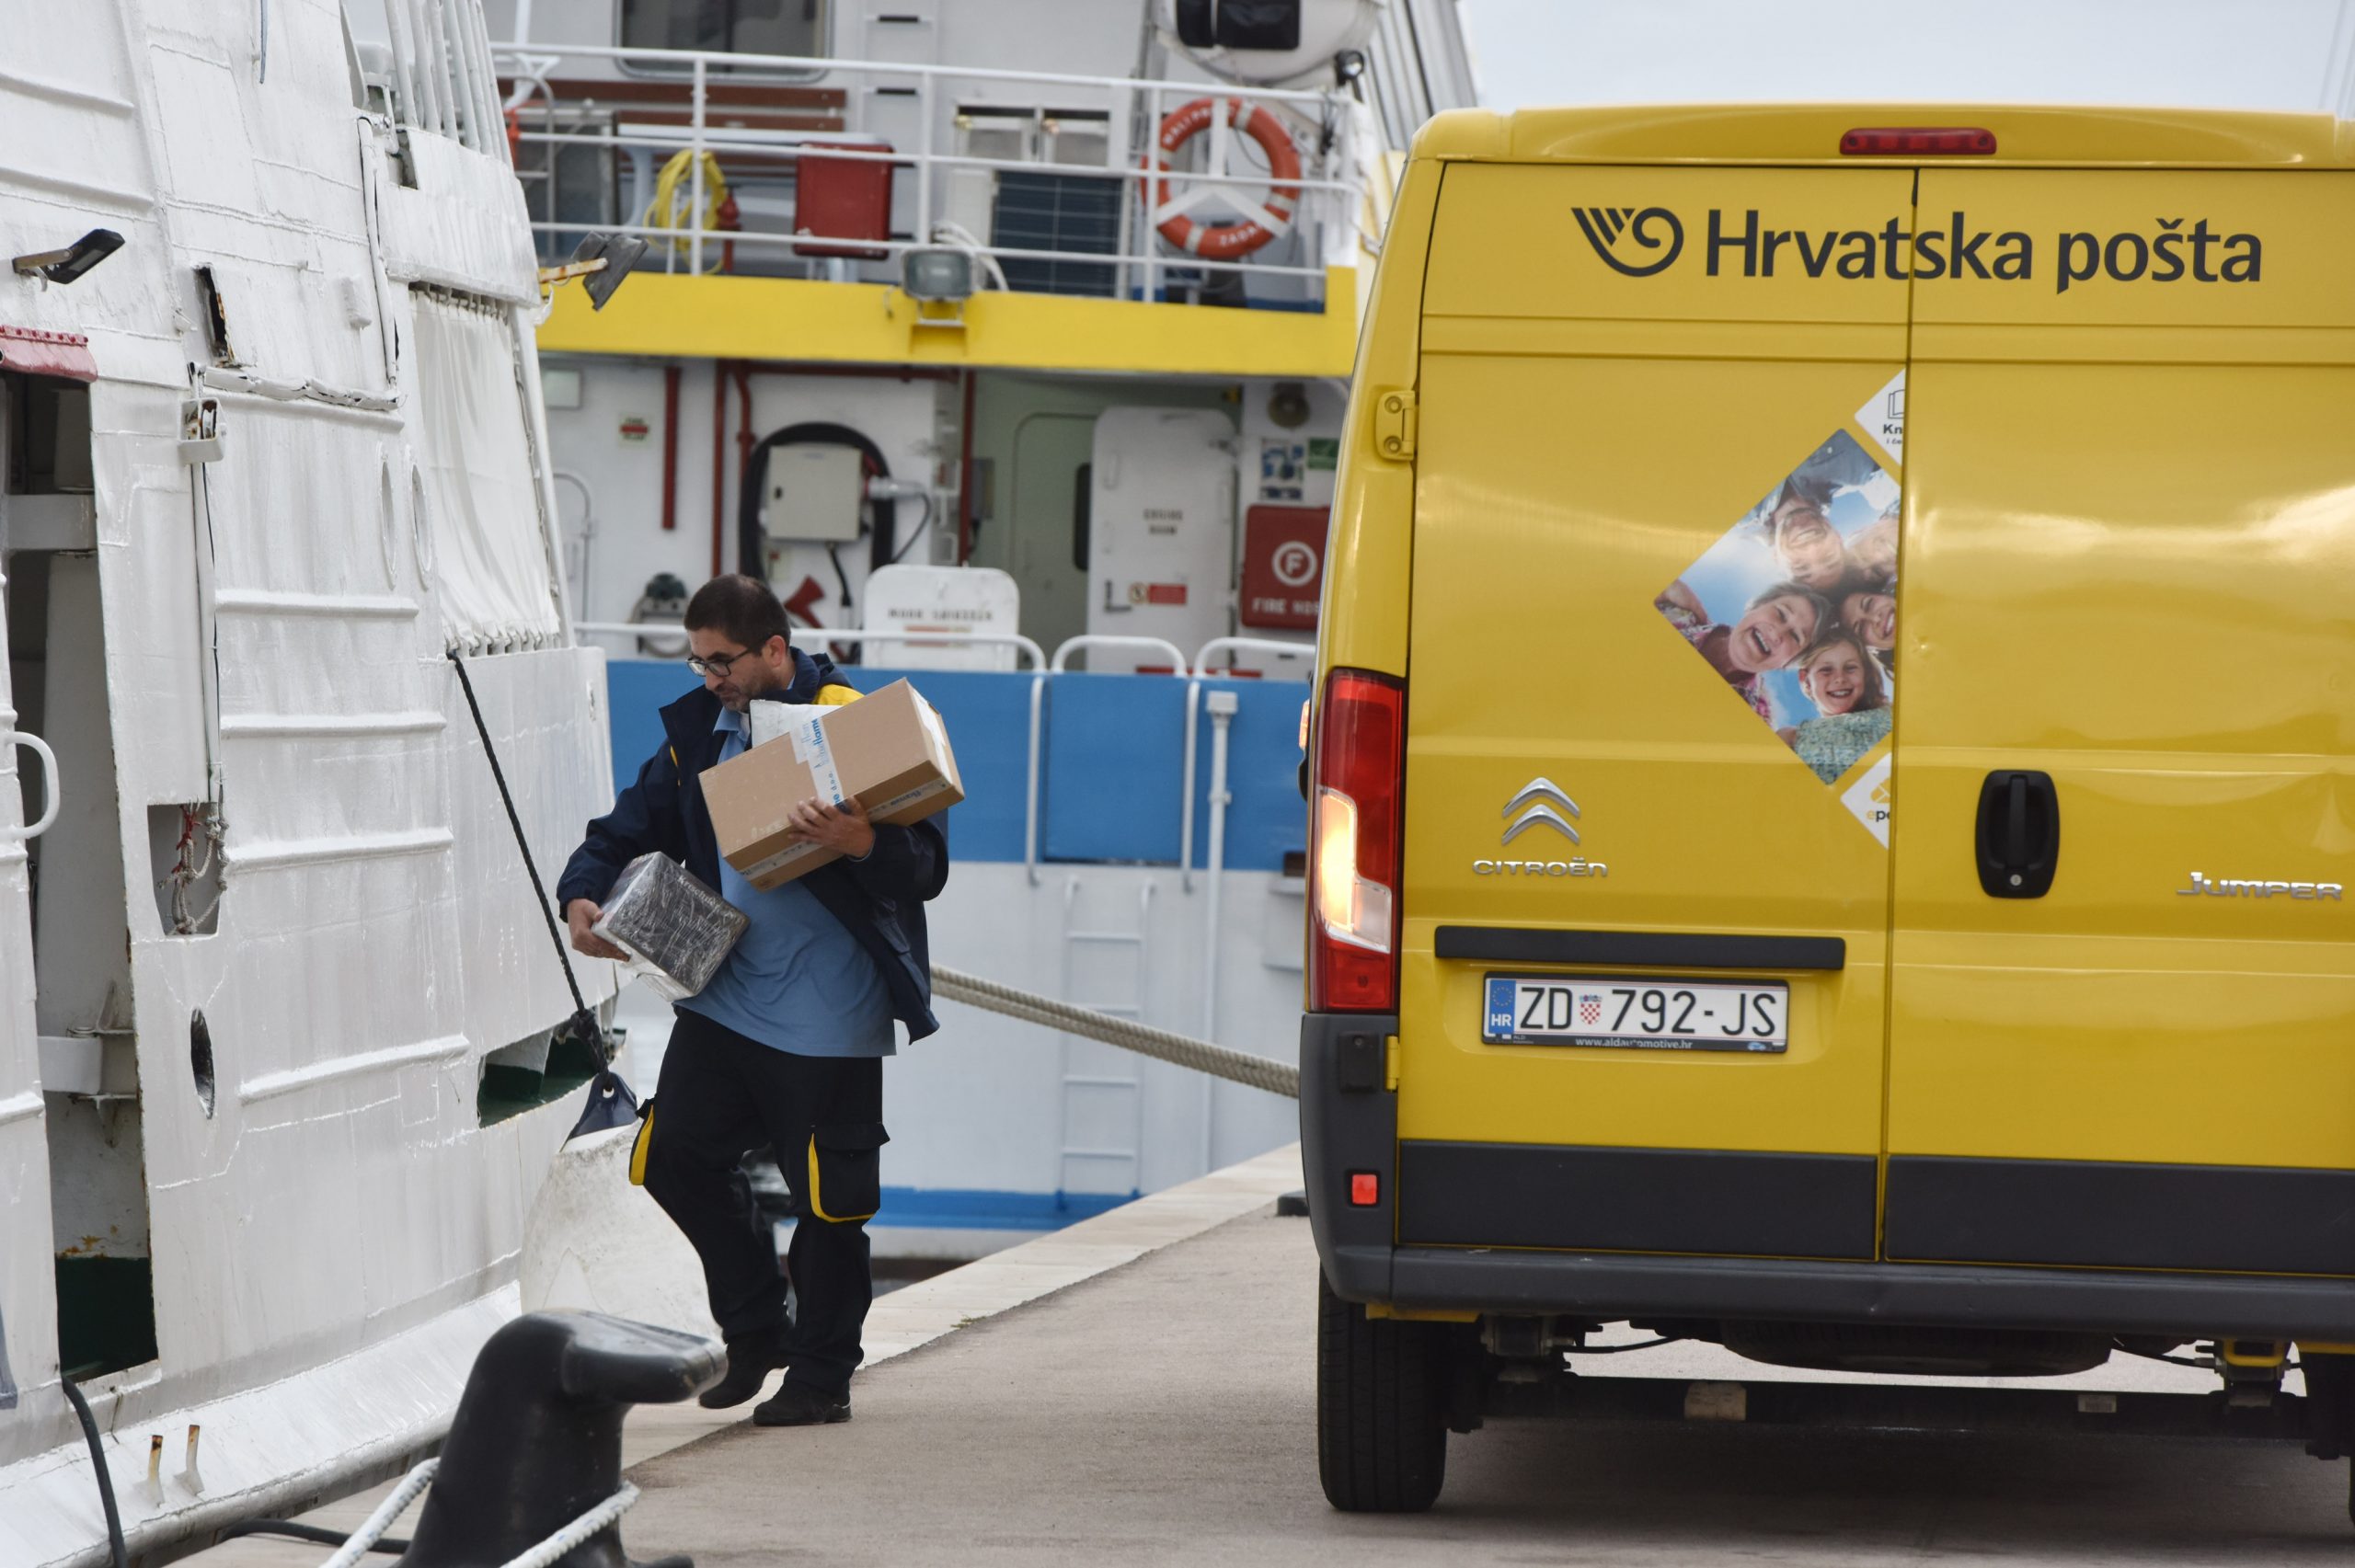 27.10.2020., Sibenik - Hrvatska posta vrsi dostavu posiljki i poste tijekom jutra na sibenske otoke.
Photo: Hrvoje Jelavic/PIXSELL